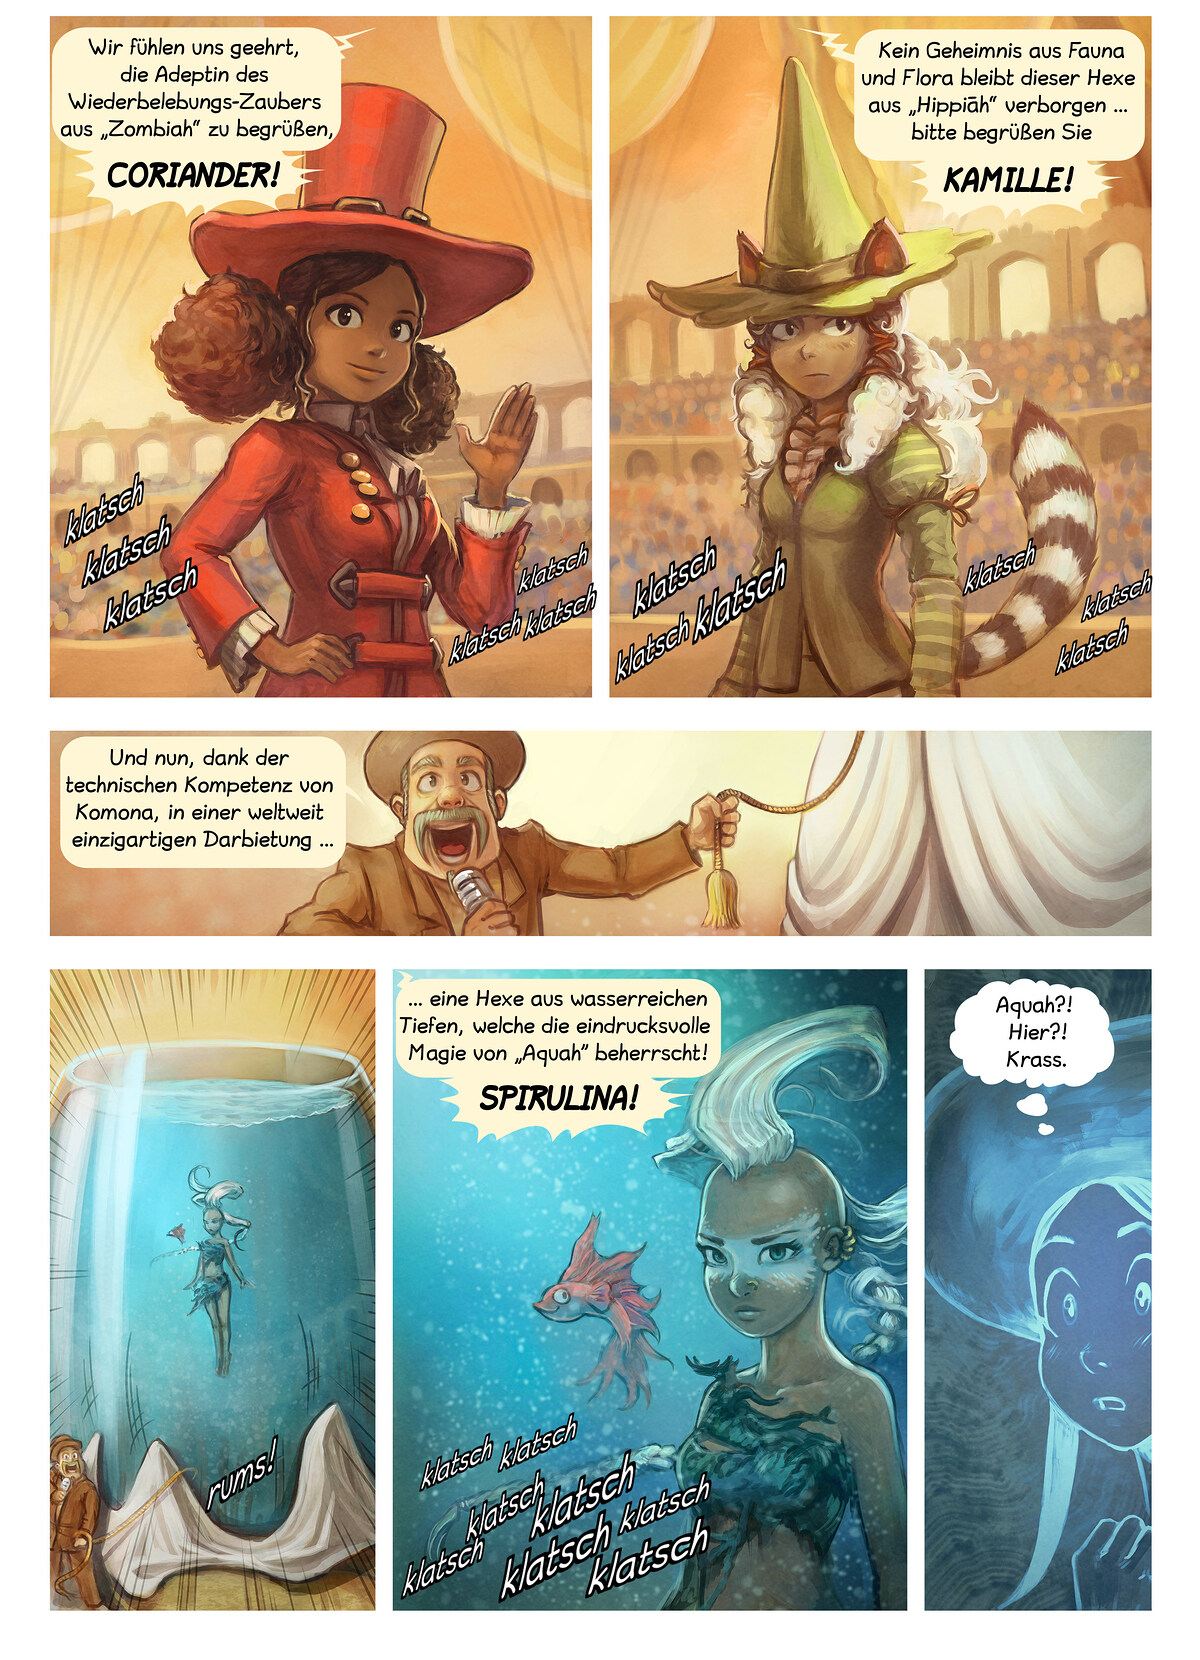 Episode 21: Der Zauberwettbewerb, Page 4